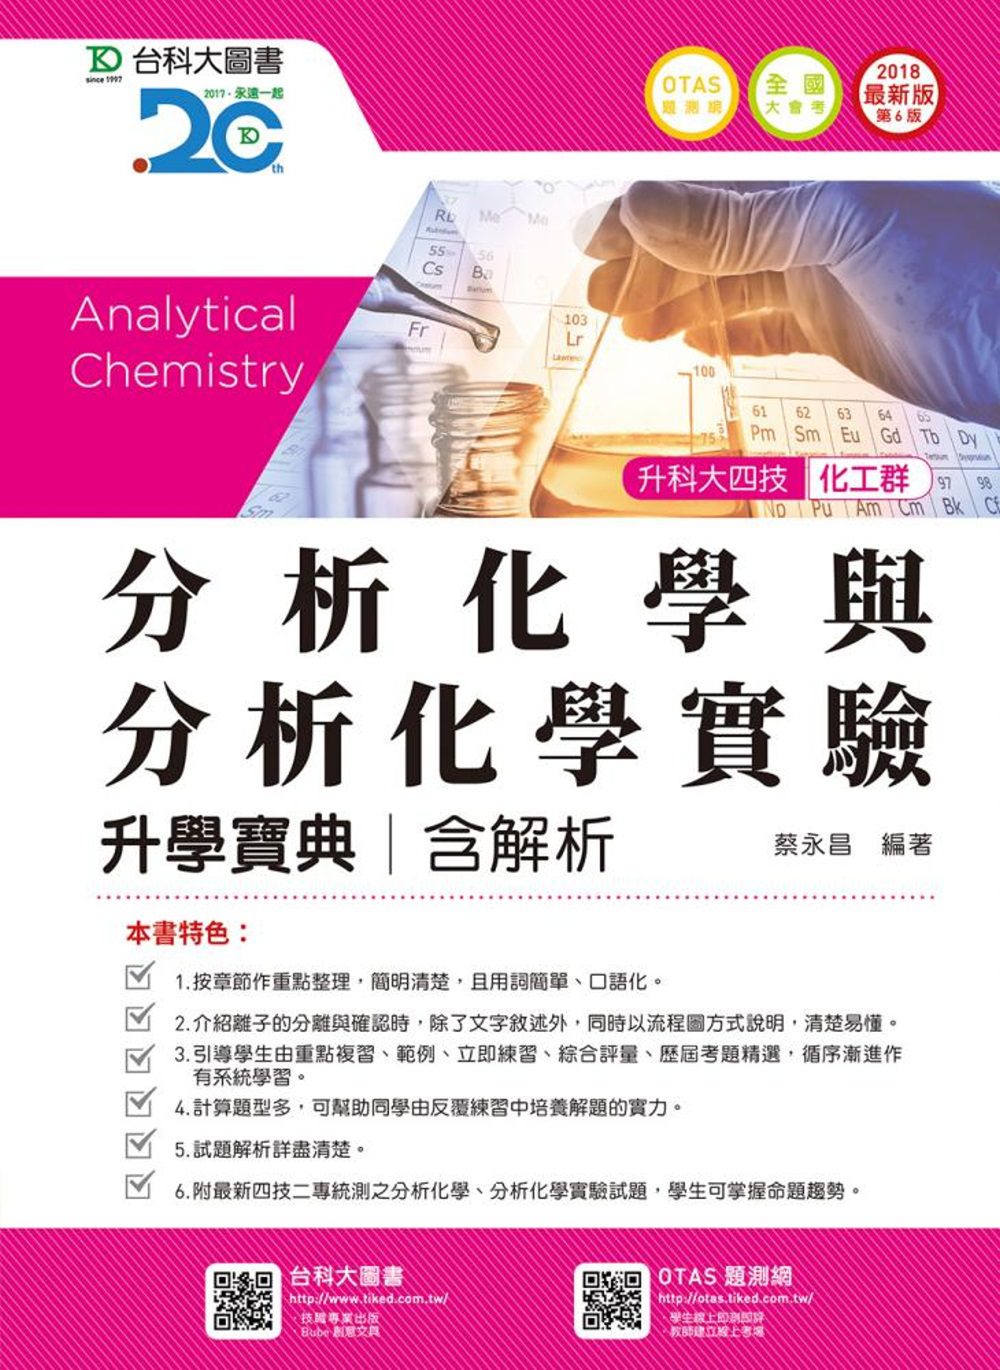 升科大四技化工群分析化學與分析化學實驗升學寶典含解析